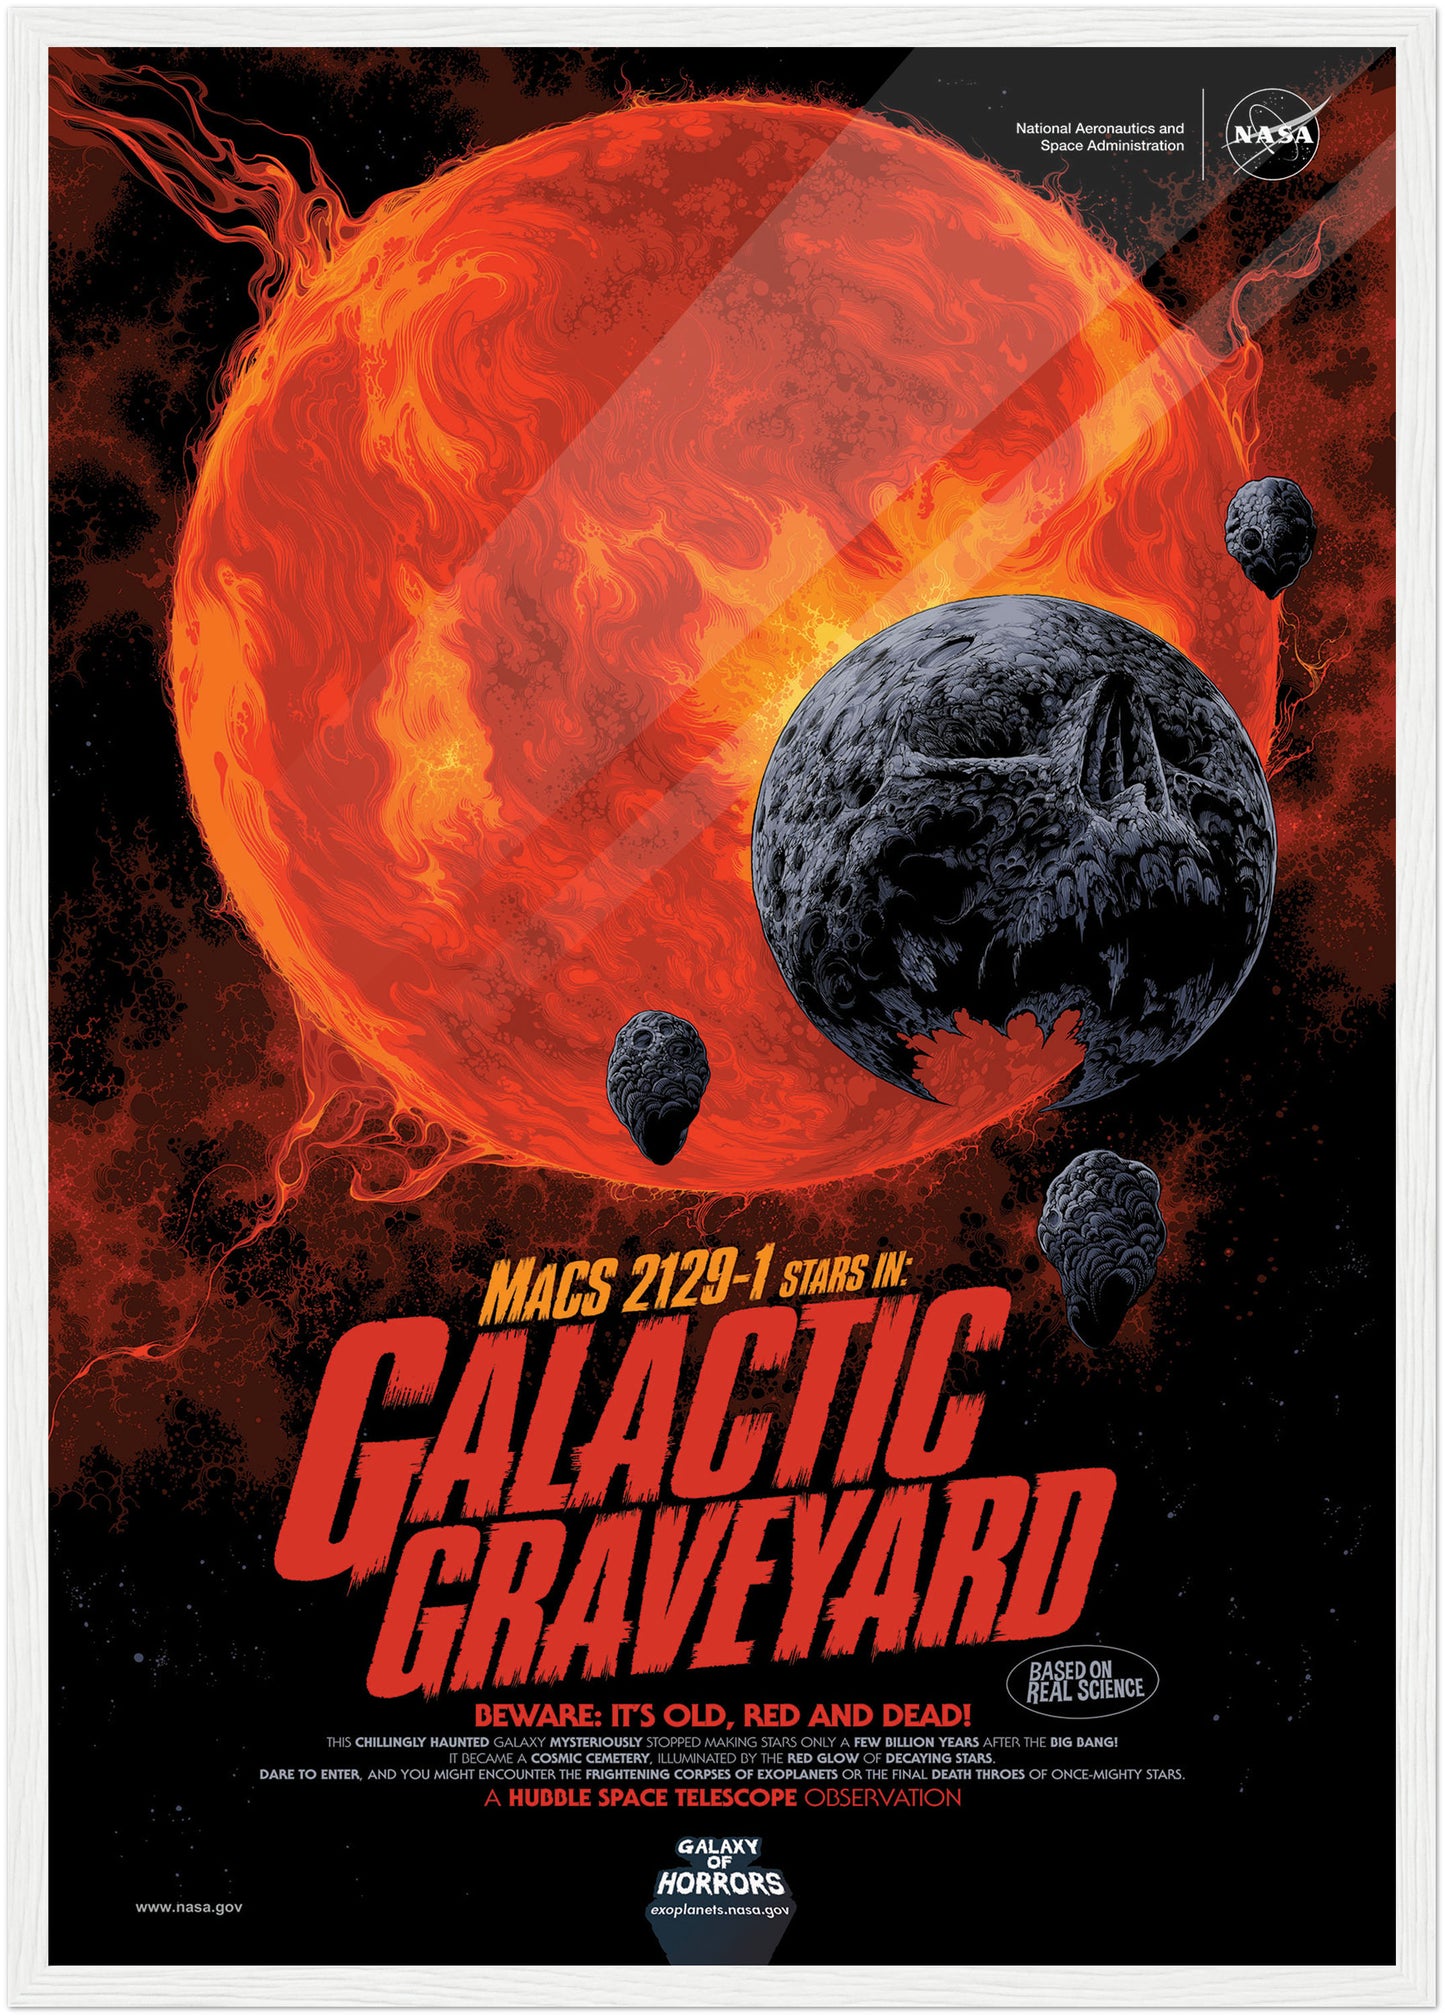 Graveyard NASA Poster